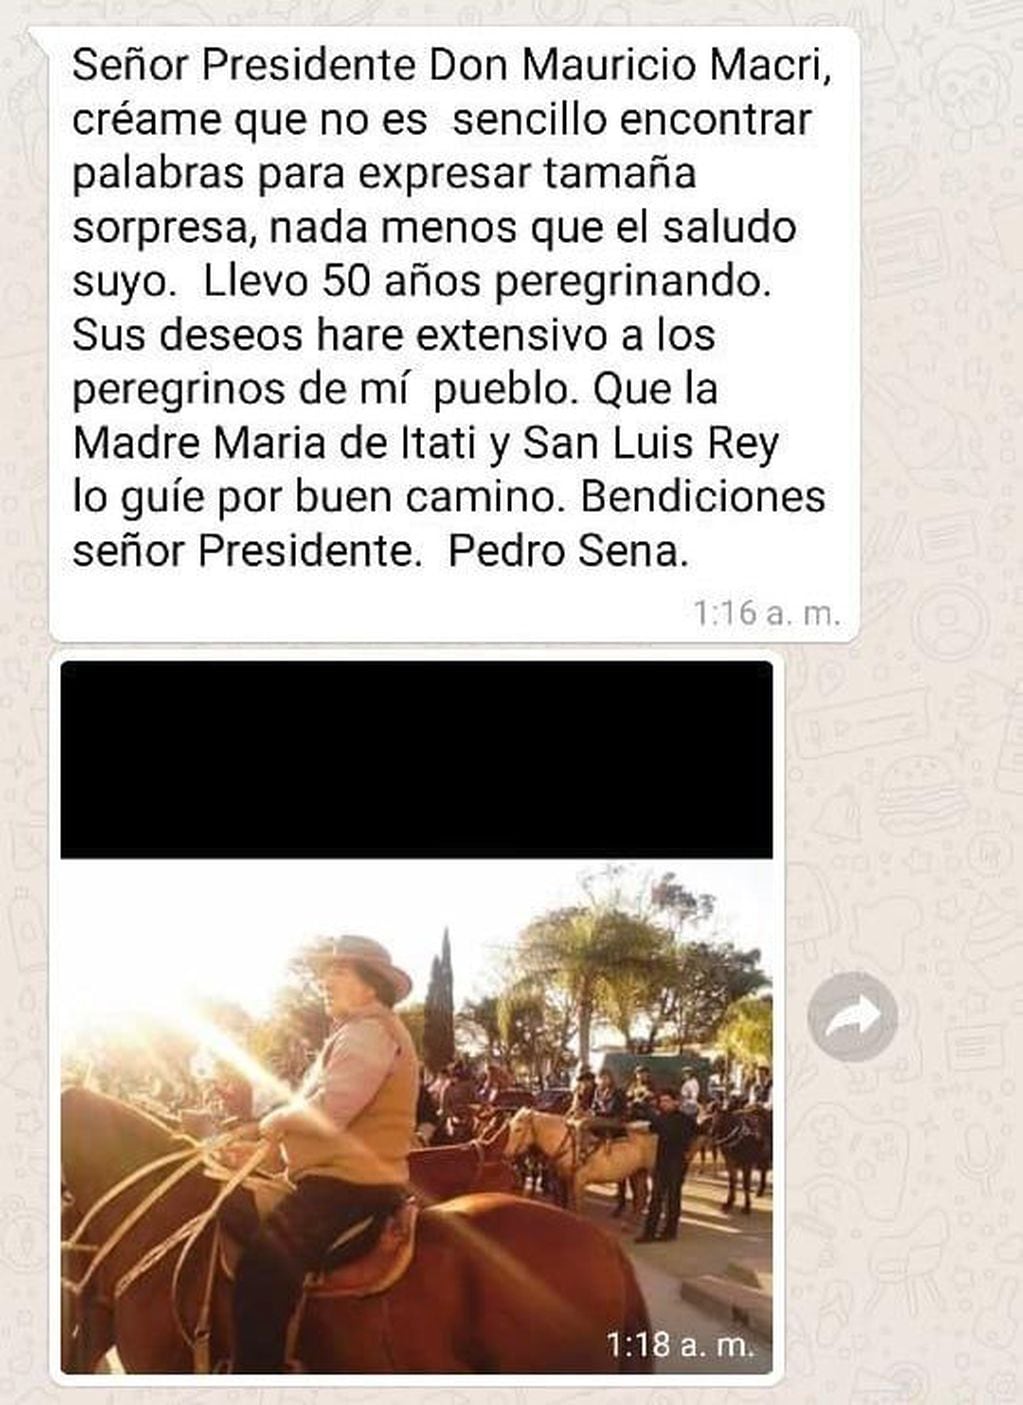 Mauricio Macri envió un saludo para los peregrinos que marchan a Itatí